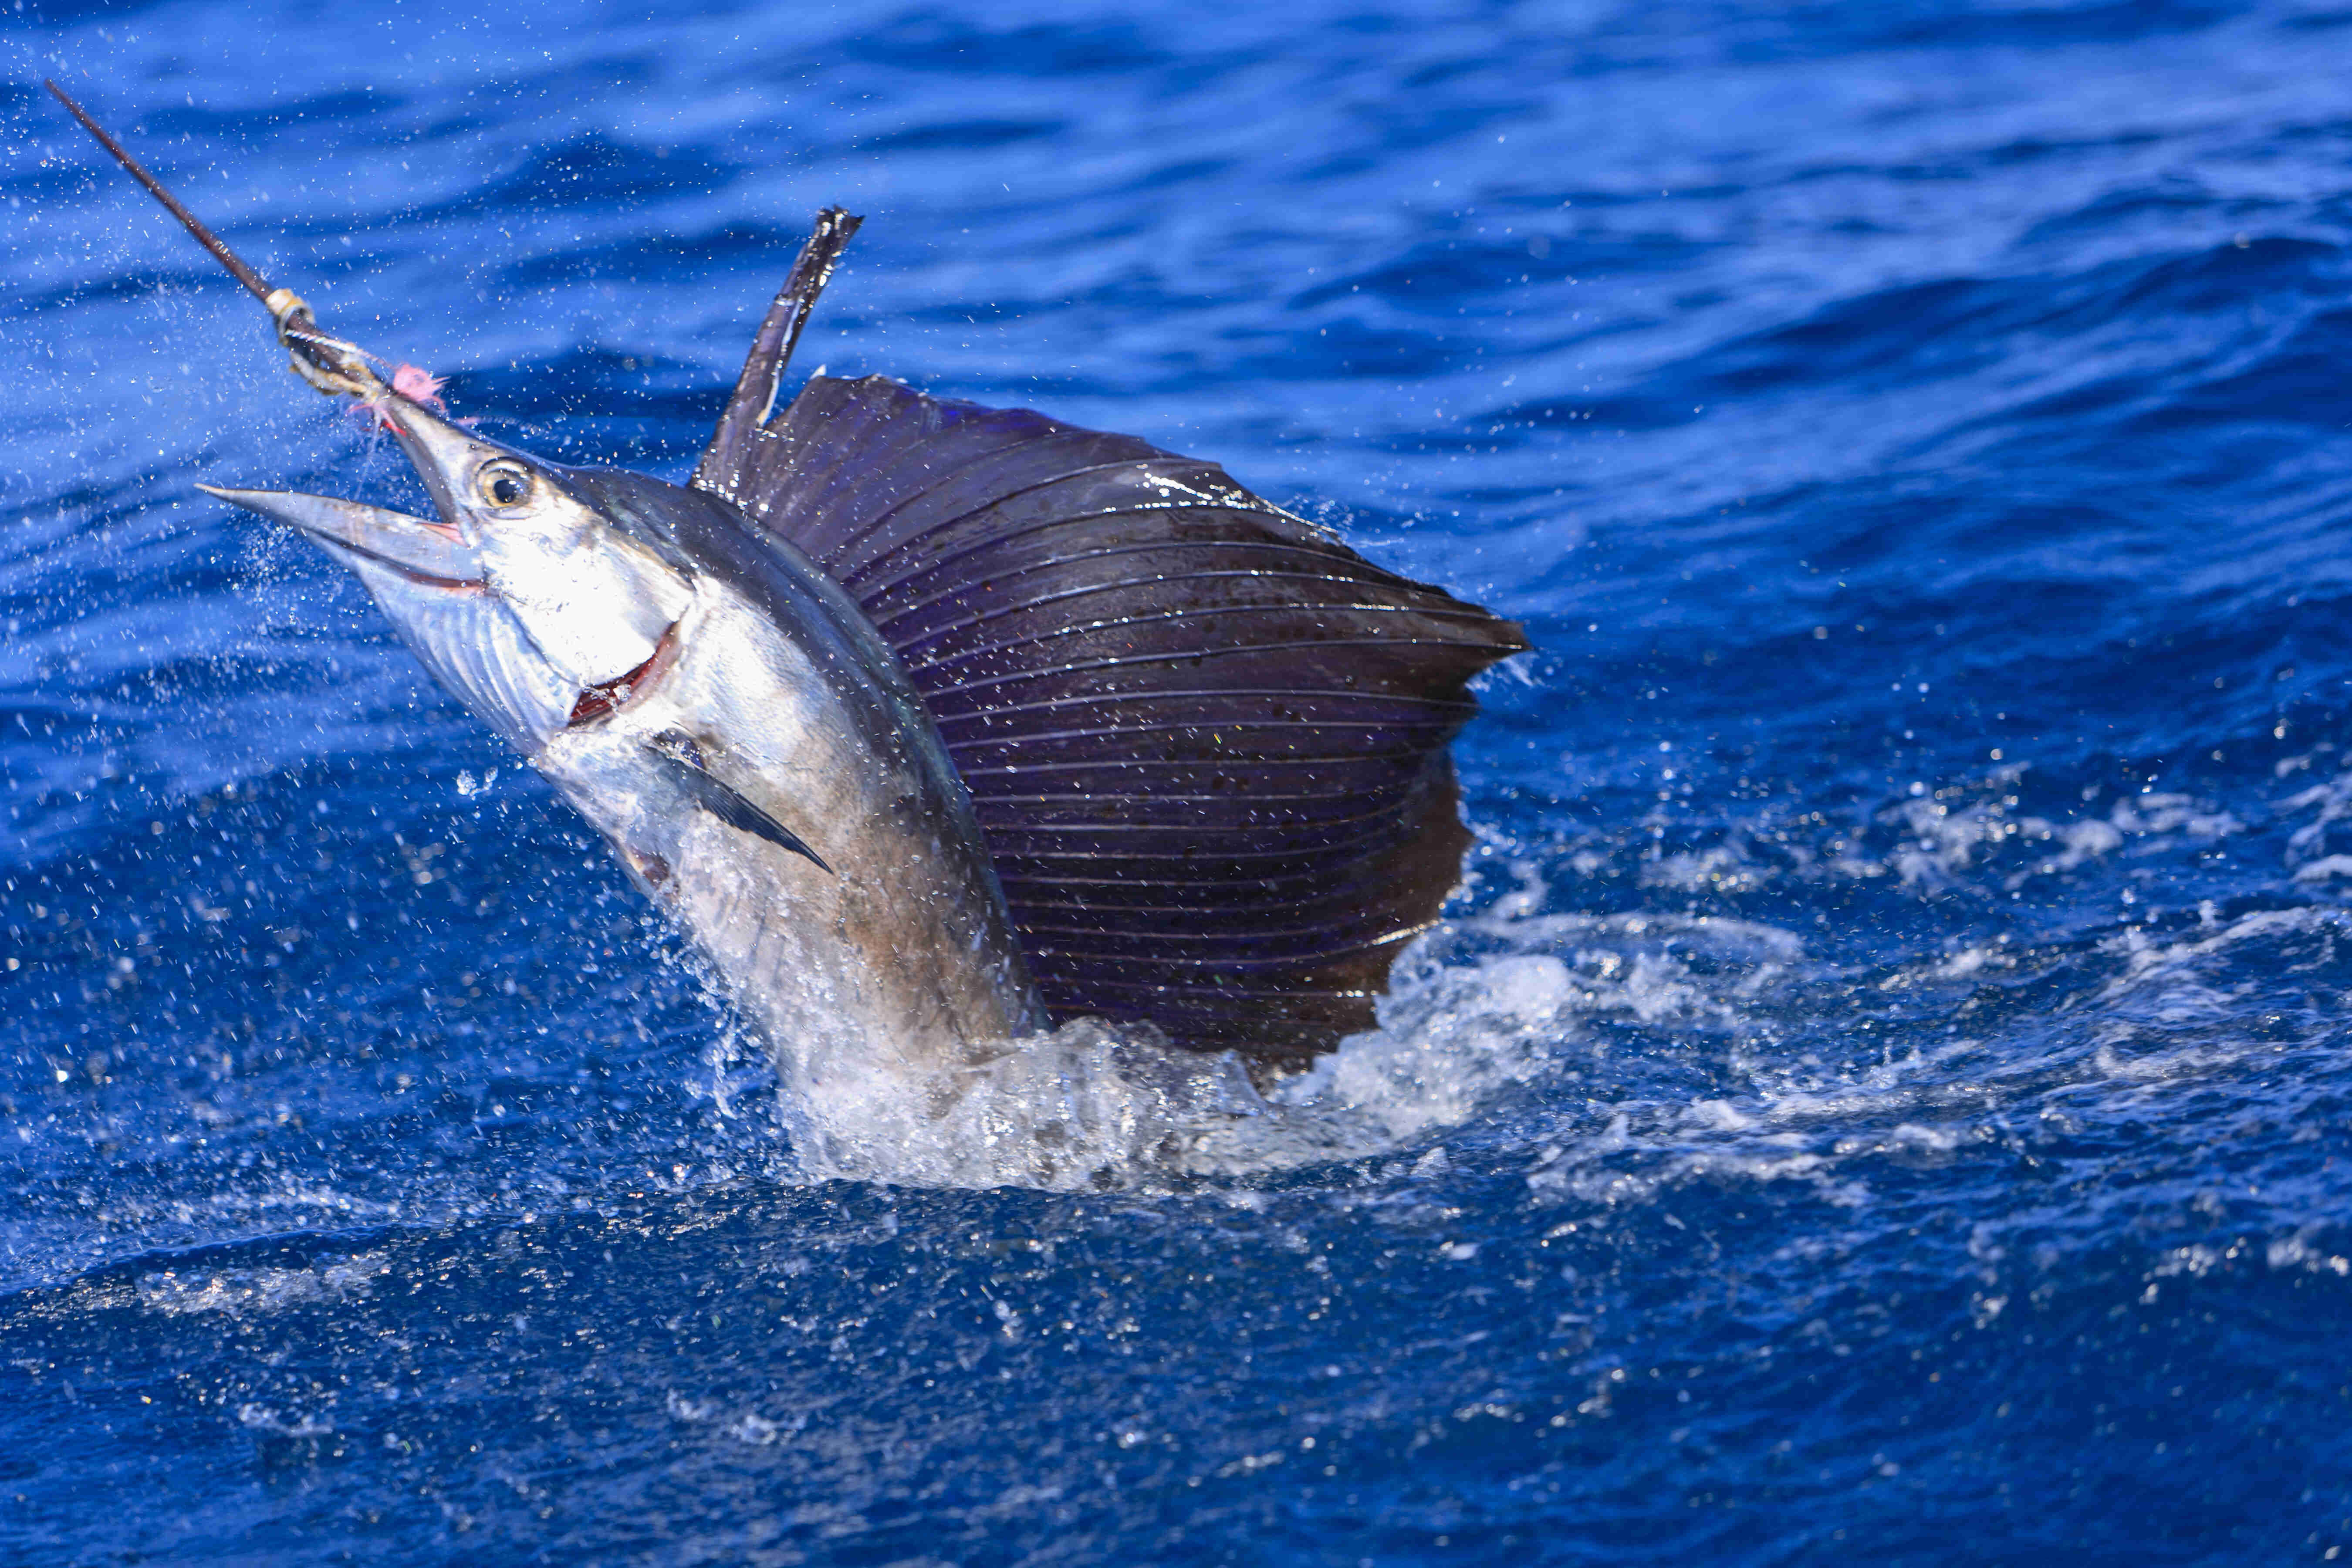 Agulhãobandeira: дознајте сè за оваа неверојатна риба